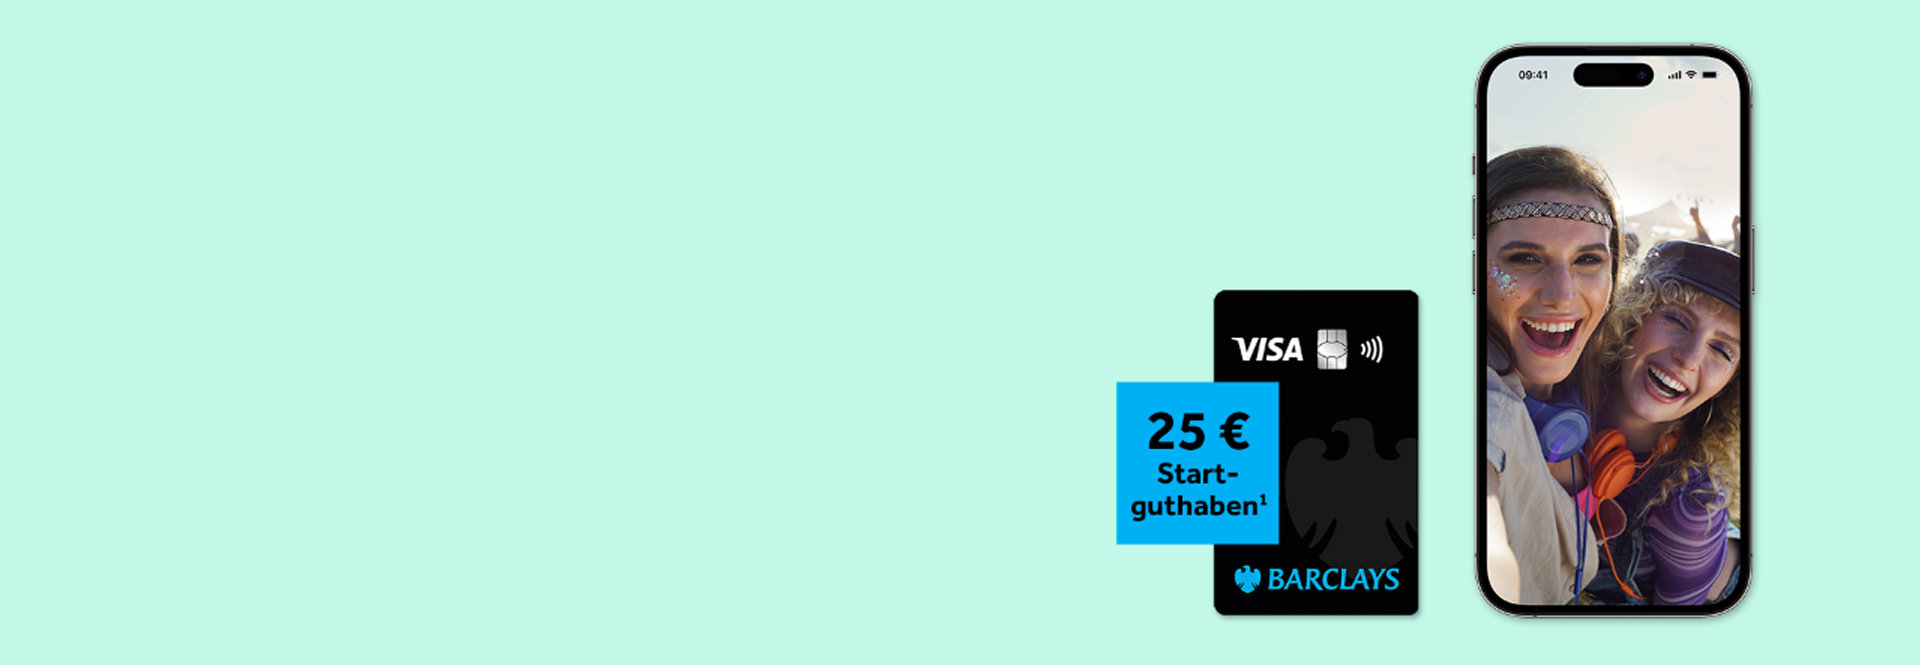 Die Barclays Visa mit 25 € Startguthaben.